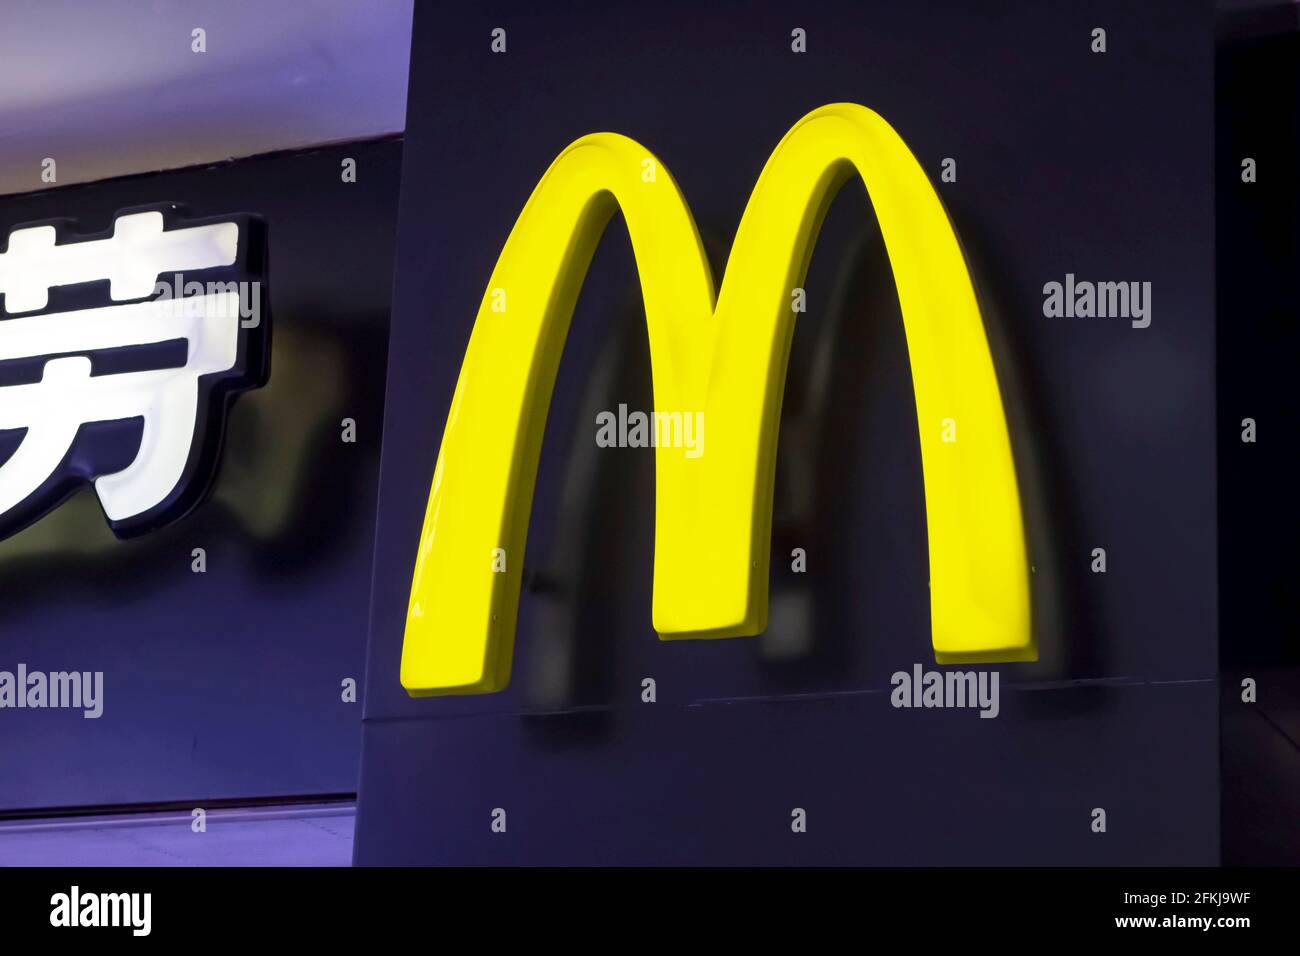 Shenzhen China - 19. April 2015. McDonald's-Restaurantschild. McDonald's ist die weltweit größte Kette von Hamburger Fast-Food-Restaurants. Stockfoto